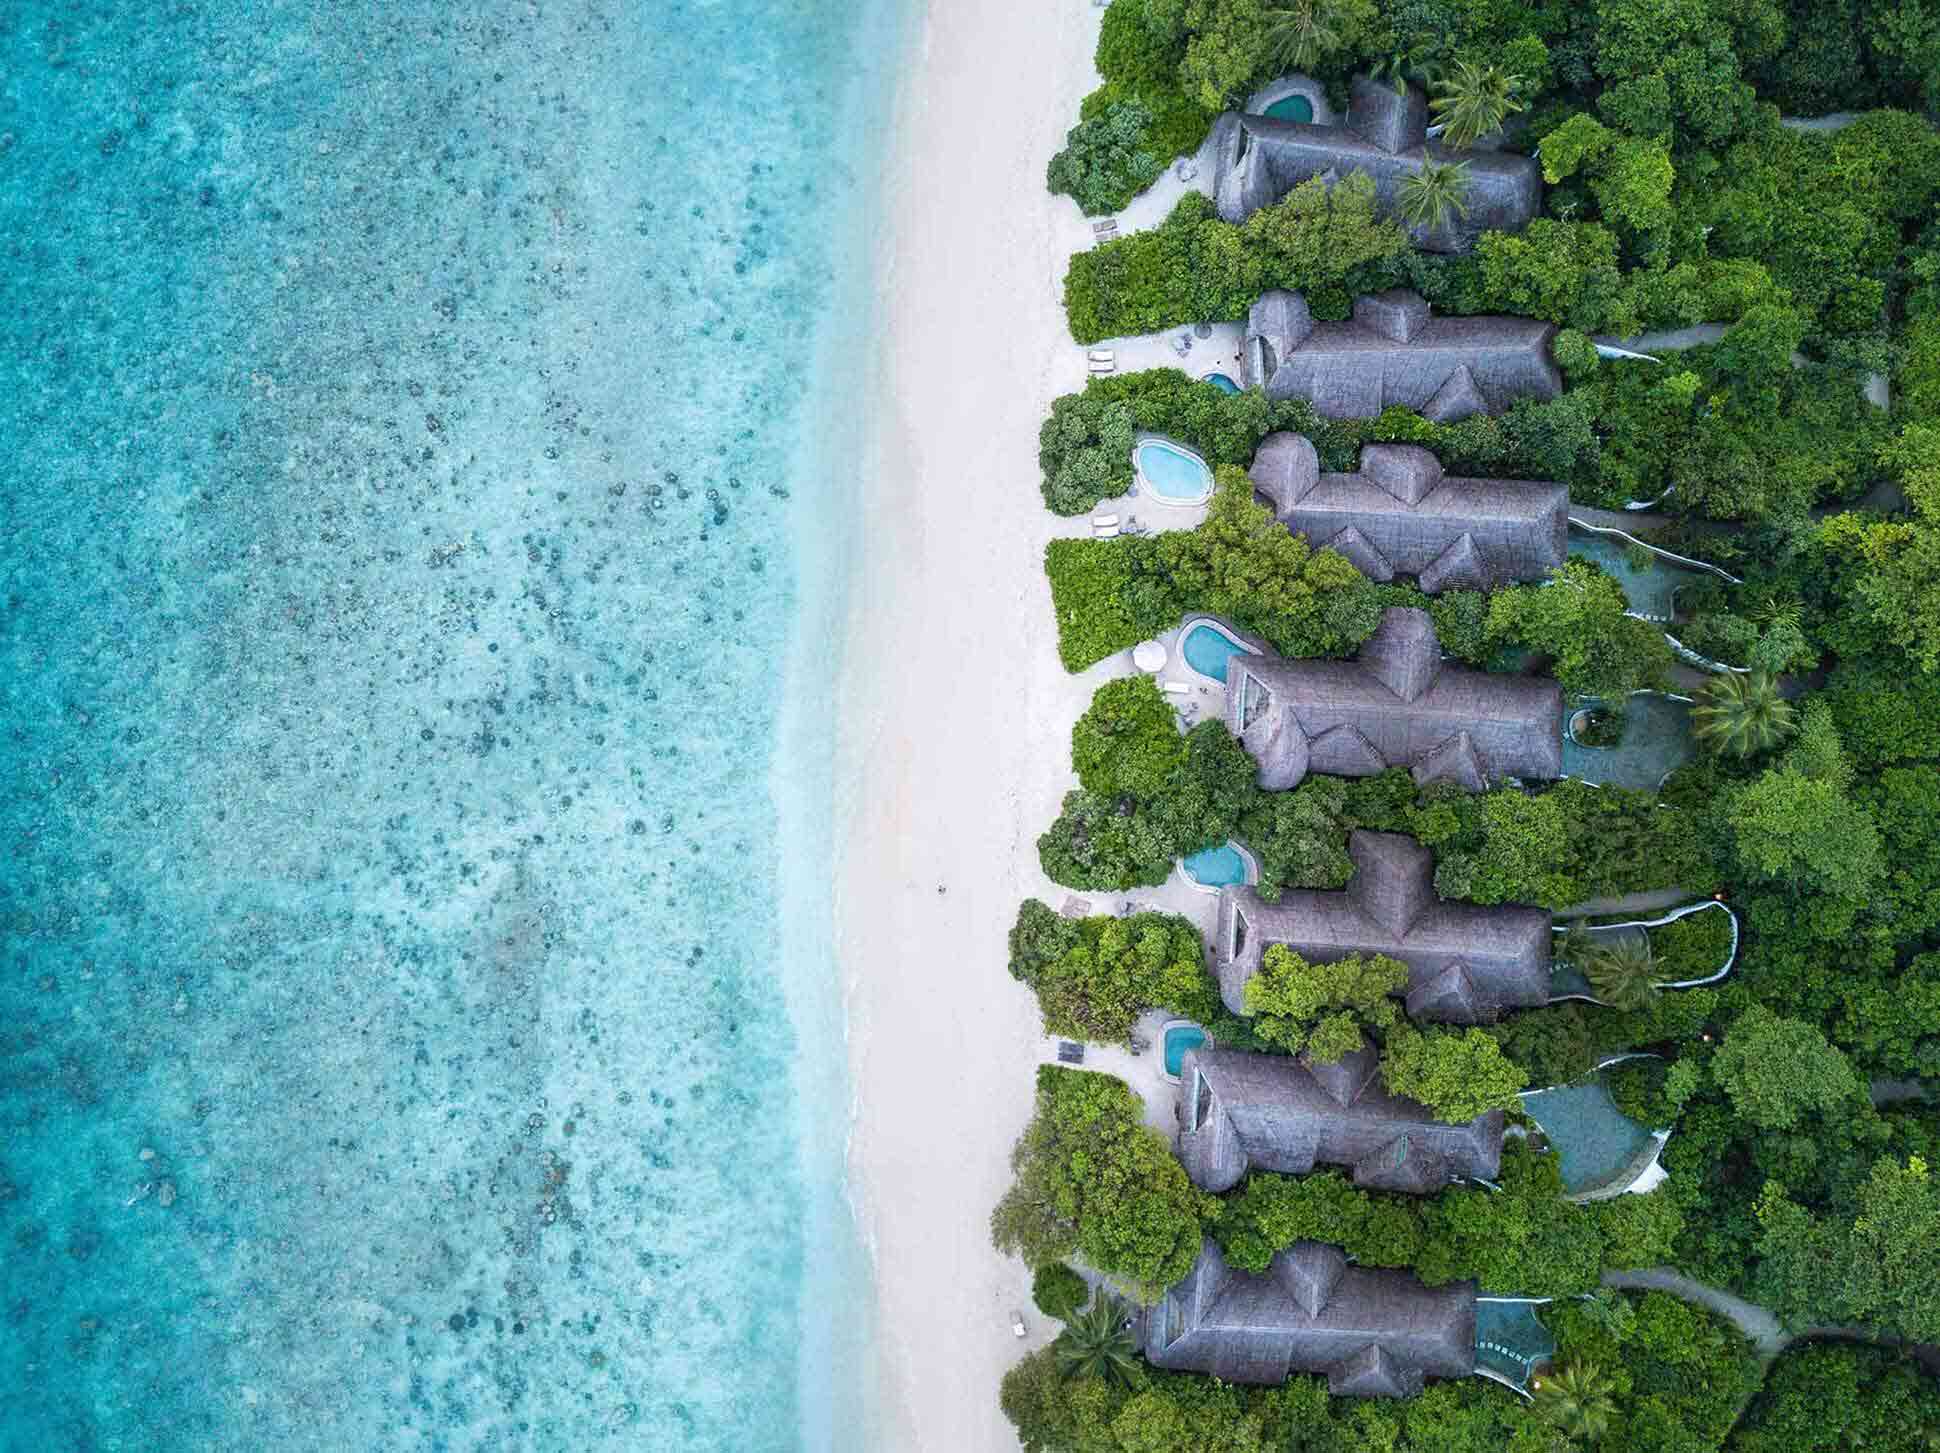 Soneva Fushi Maldives launches buyout package